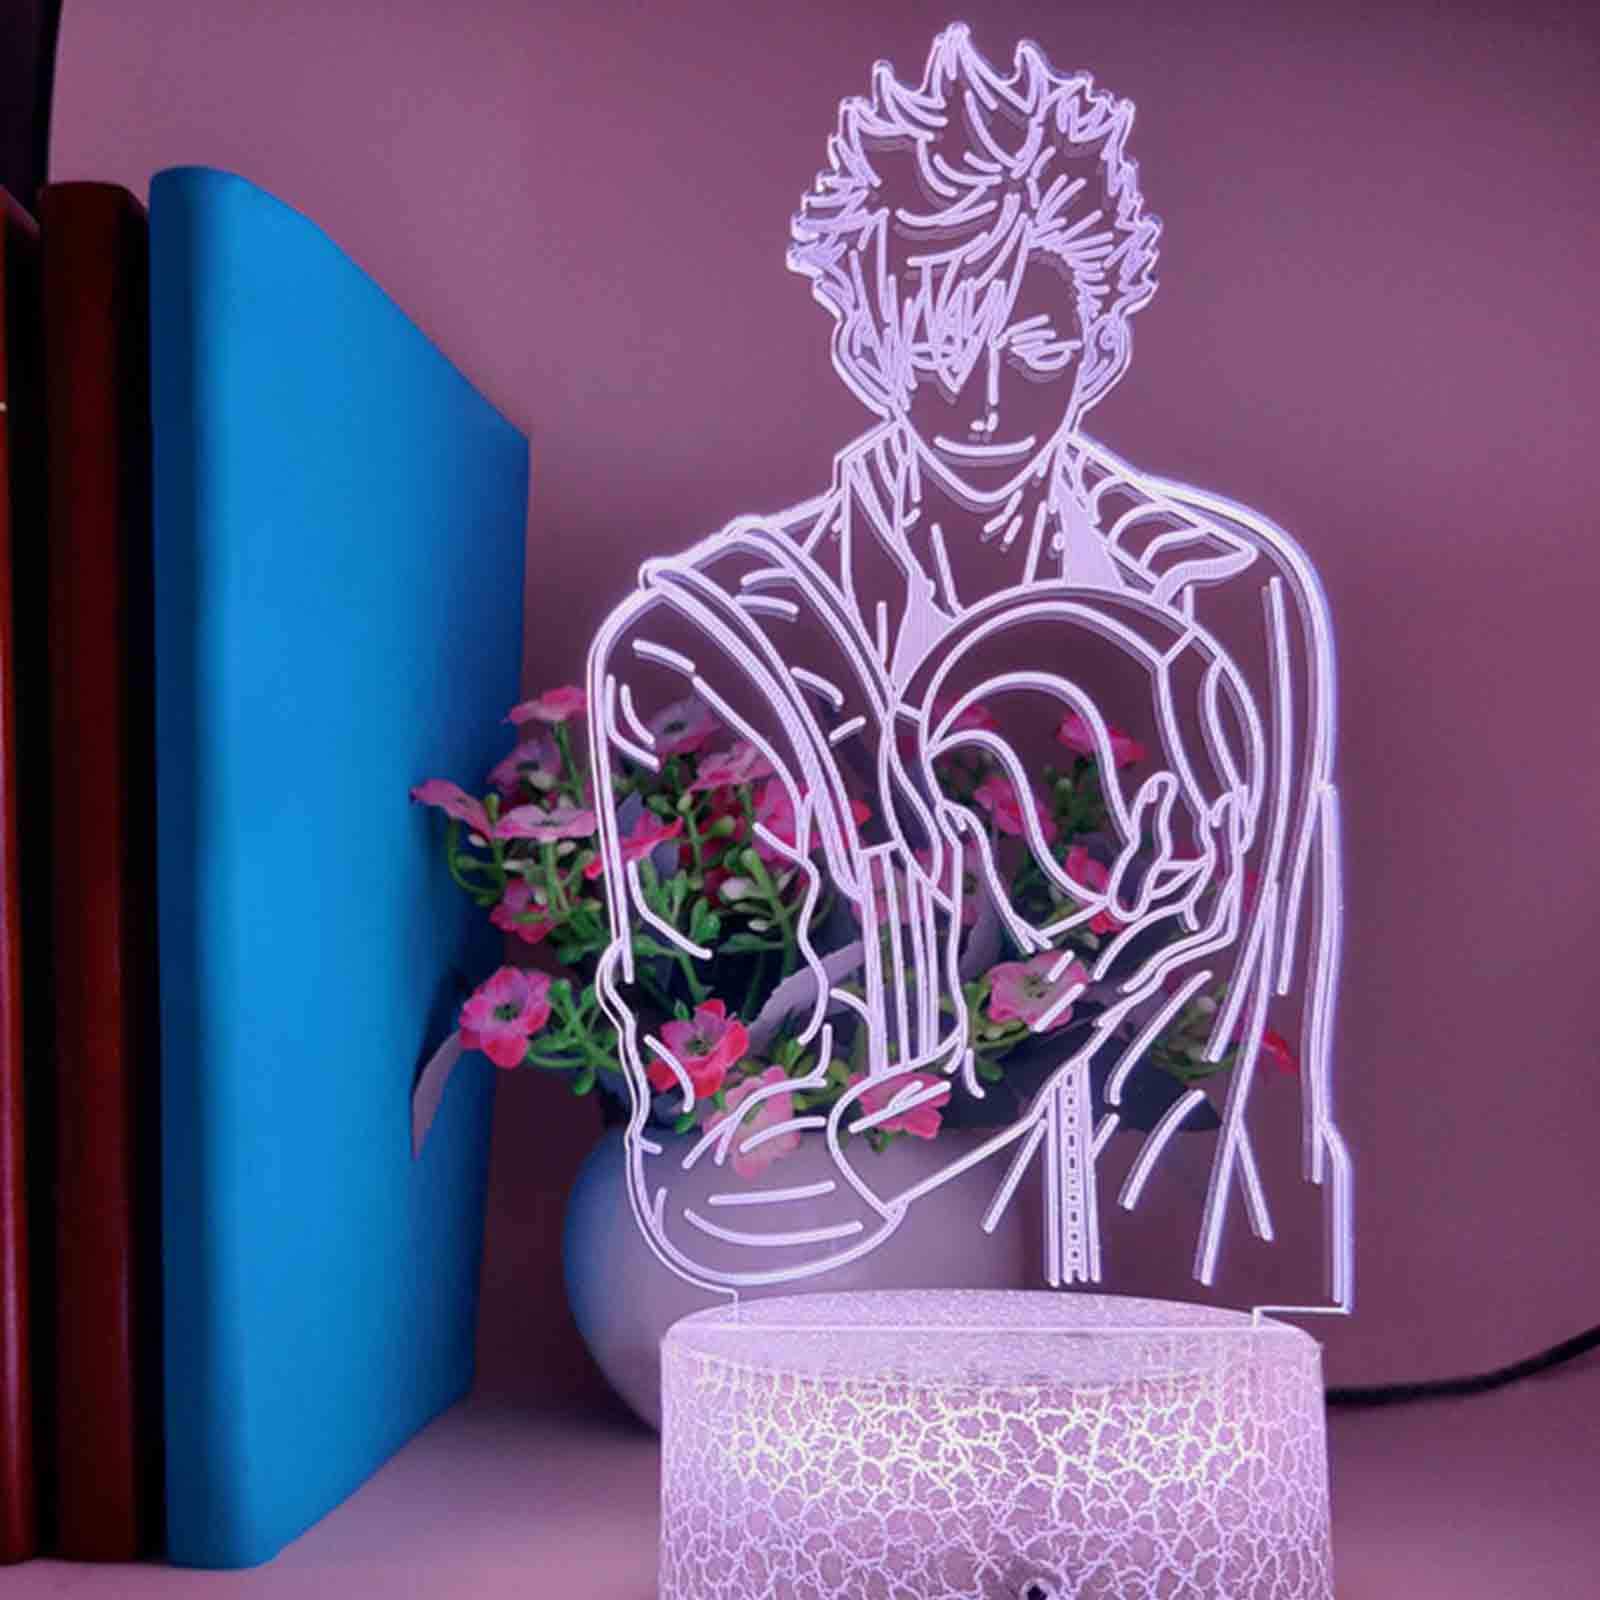 3D-Illusion Lampe LED-Nachtlicht Haikyuu Tooru Oikawa Anime Haikyuu Tischlampe für Wohnkultur Beste Geburtstags-Weihnachtsgeschenke für Kinder (7 Color Touch + Remote)